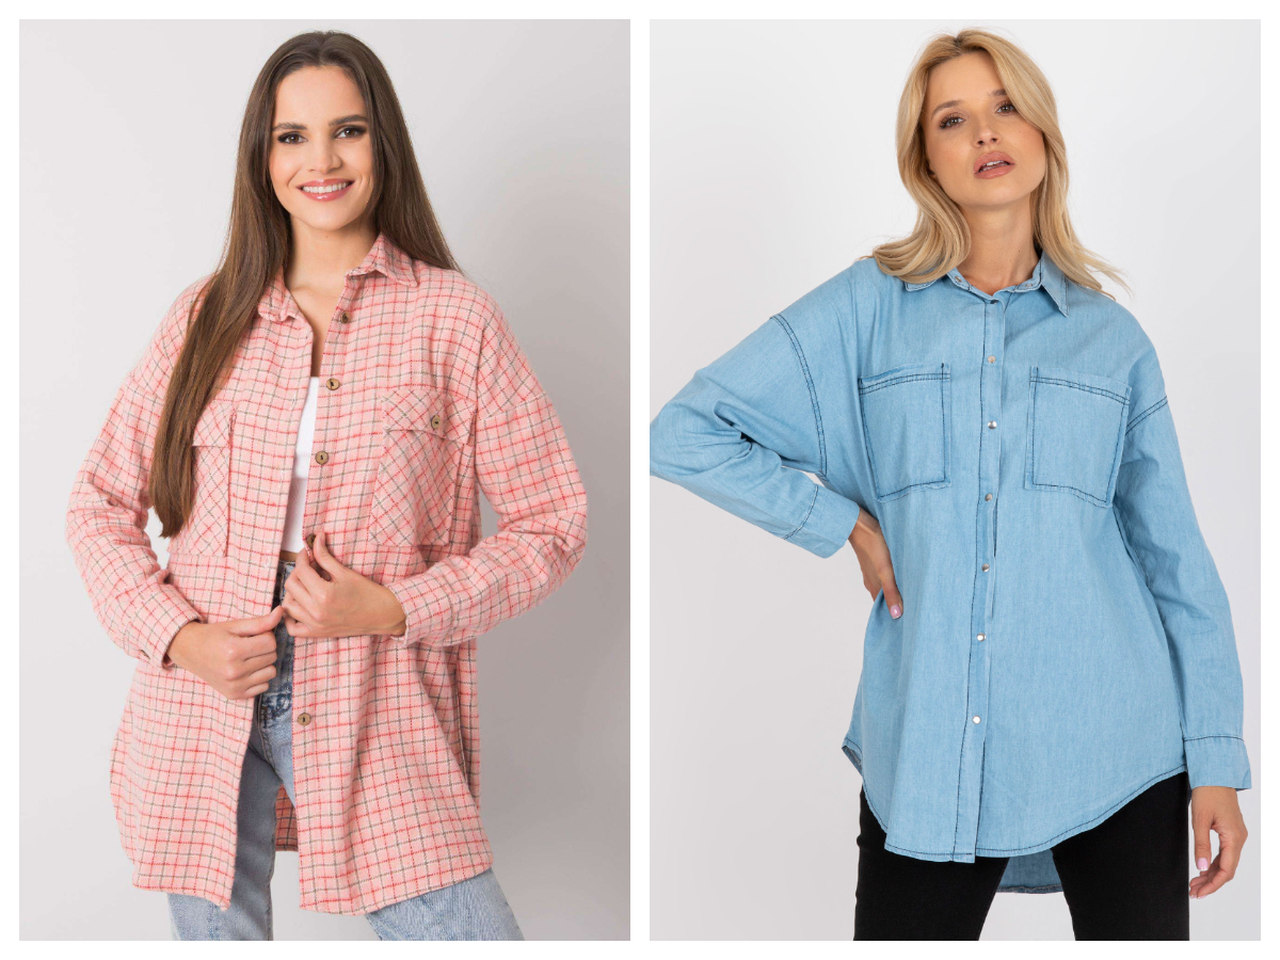 Nowa kolekcja koszul damskich Rue Paris - sprawdzamy sezonowe trendy 